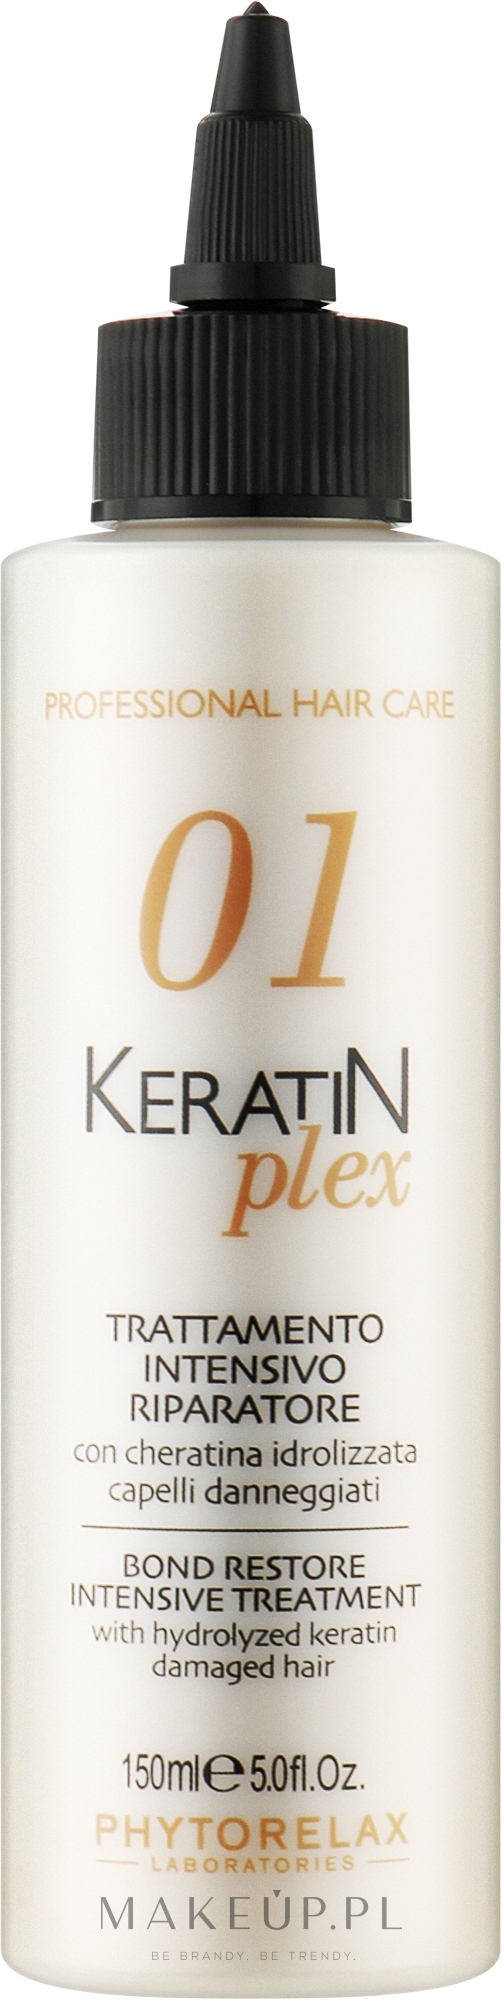 Produkt do intensywnej regeneracji z hydrolizowaną keratyną - Phytorelax Laboratories Keratin Plex Bond Restore Intensive Treatment — Zdjęcie 150 ml